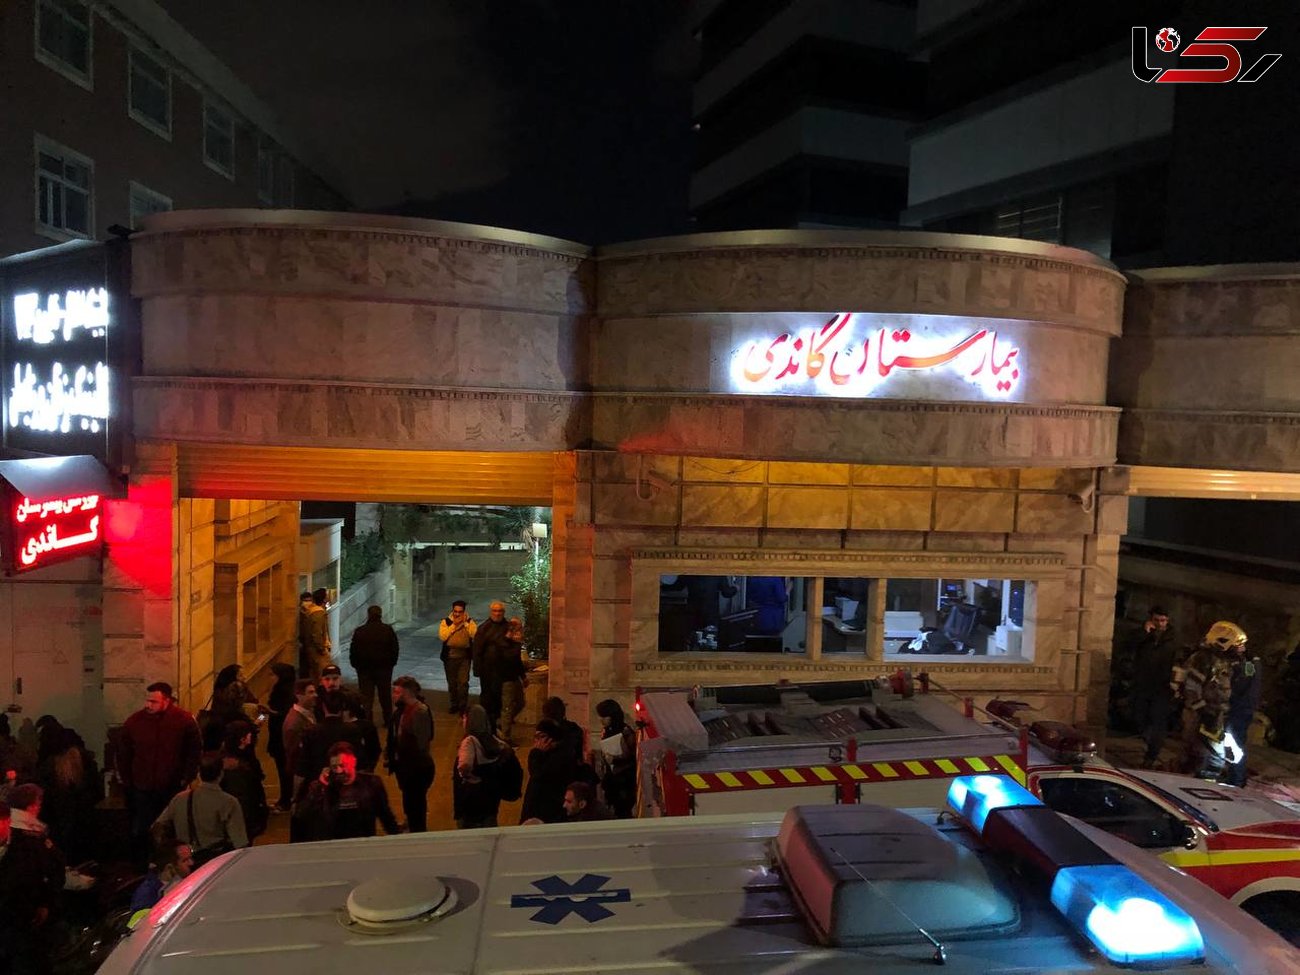 سخنگوی آتش نشانی: تعدادی از بیمار بیمارستان گاندی در ساختمان میان دود گرفتارند/ امدادگران در تلاش برای کمک هستند